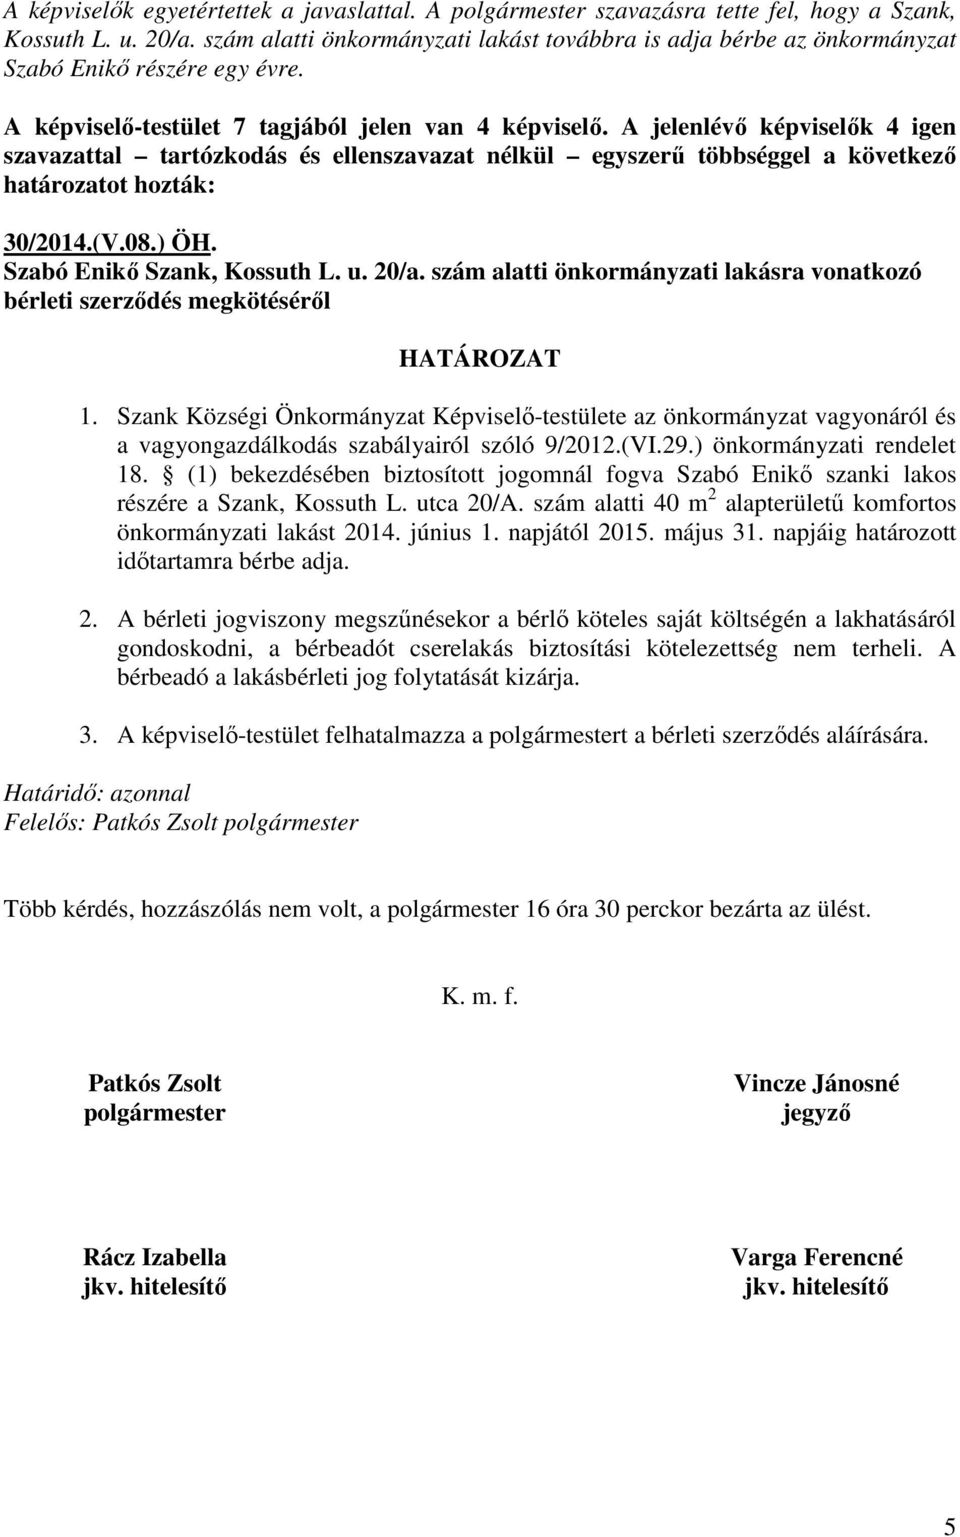 A jelenlévő képviselők 4 igen szavazattal tartózkodás és ellenszavazat nélkül egyszerű többséggel a következő határozatot hozták: 30/2014.(V.08.) ÖH. Szabó Enikő Szank, Kossuth L. u. 20/a.